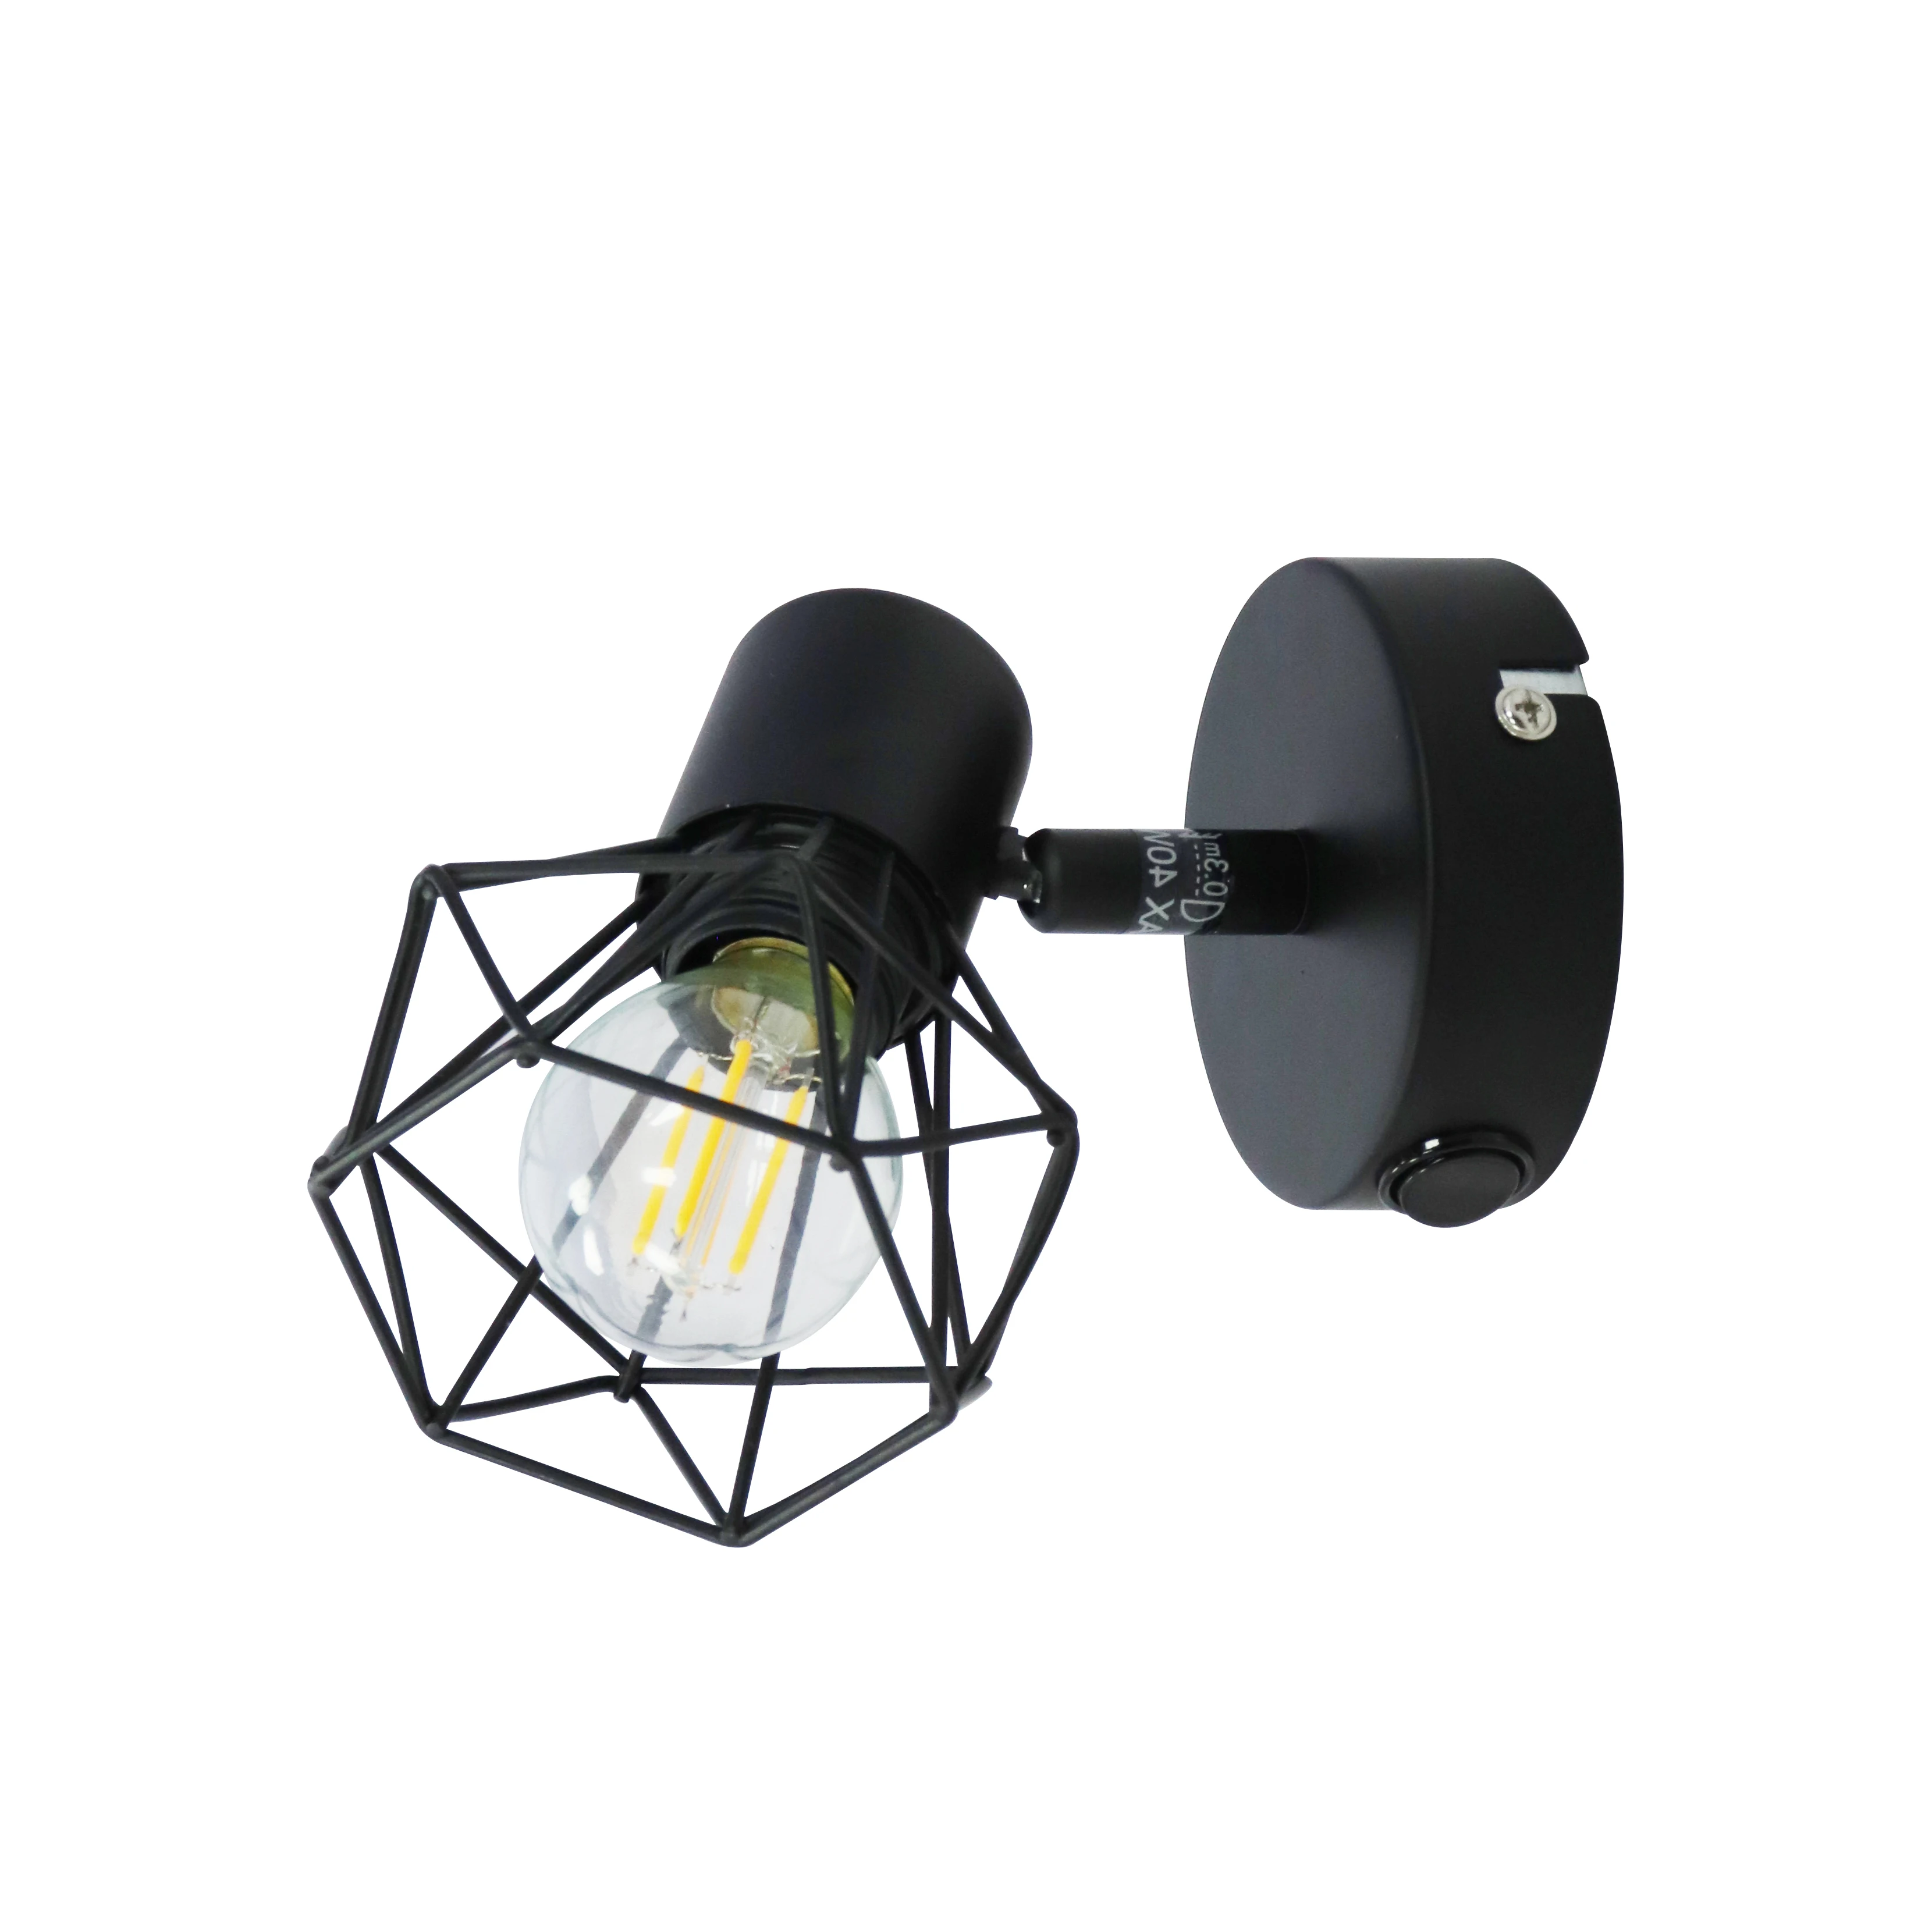 Hot sale Iron Ceiling light Led housing Spotlights Lamp Black White Satin nickel E14 bulb Spotlight